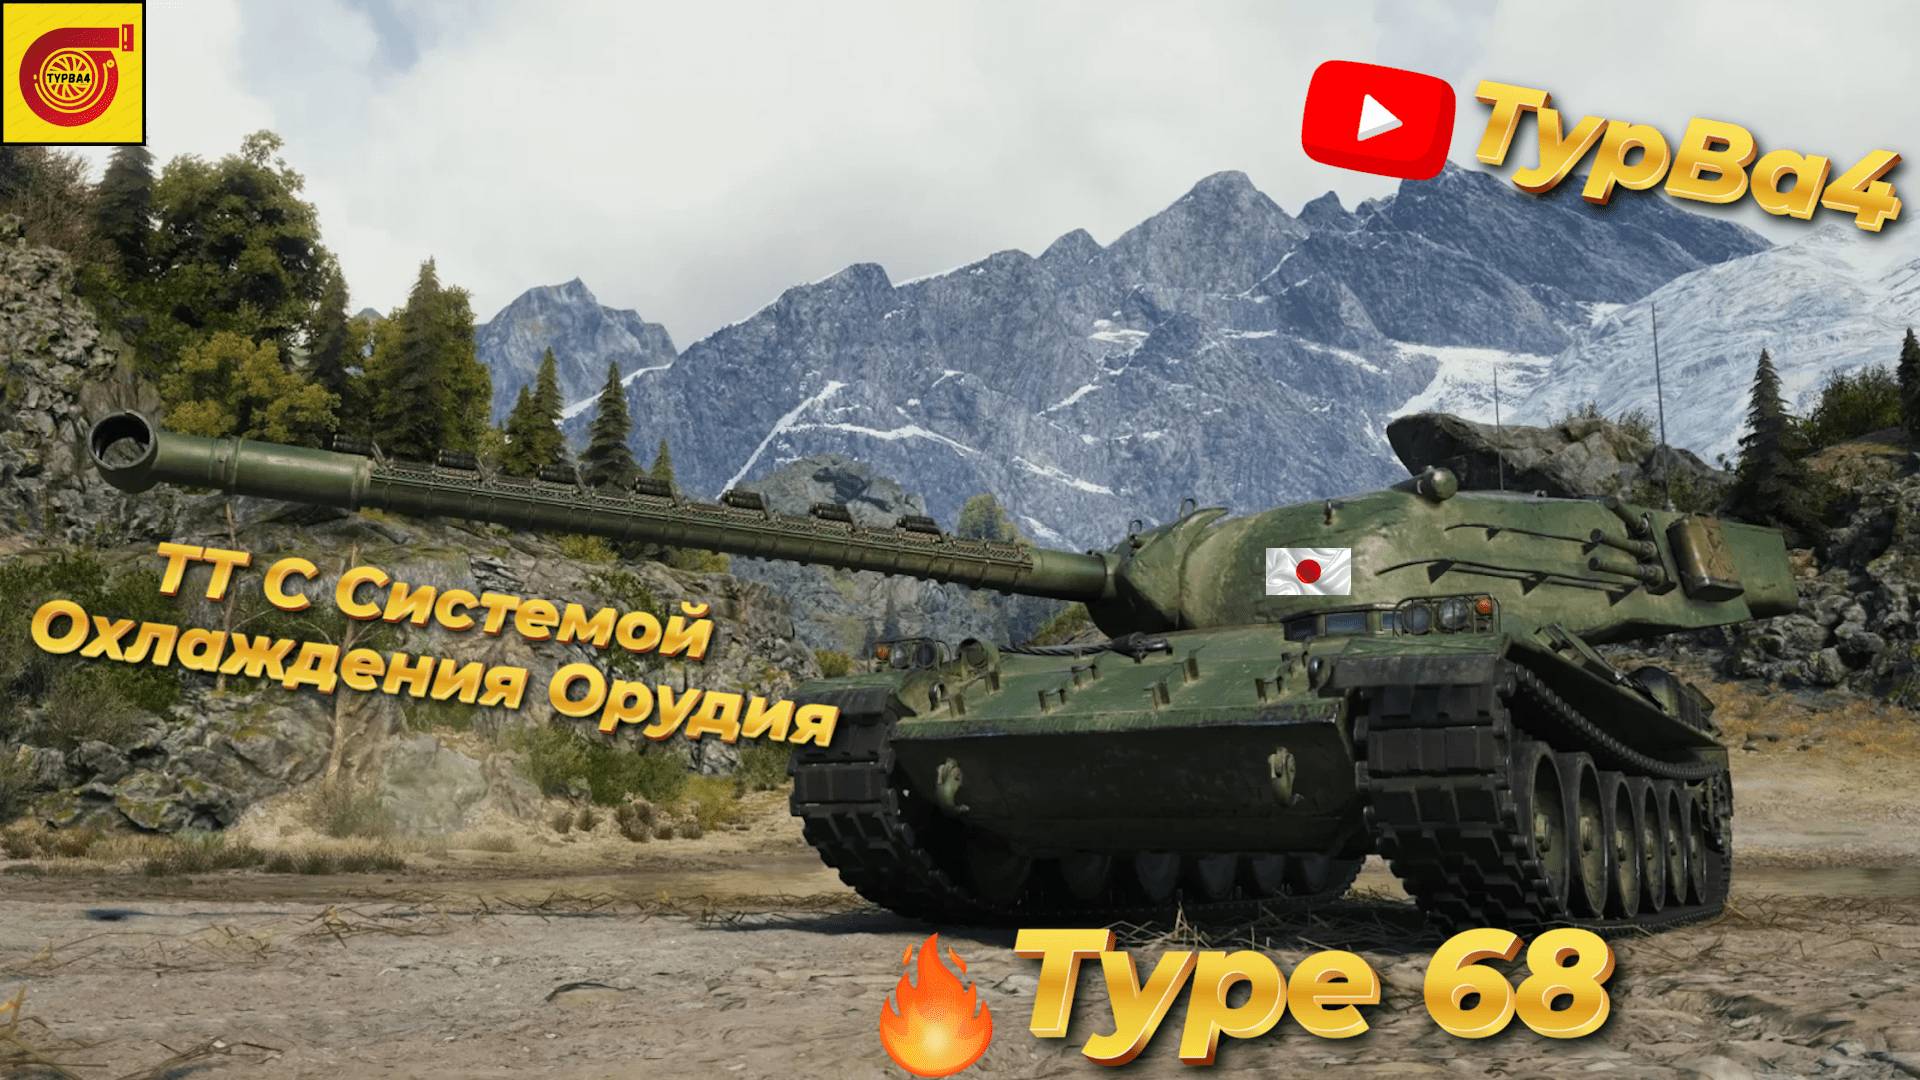 Type 68 ТТ С Системой Охлаждения Орудия I На 100 подписчиков розыгрыш голды I